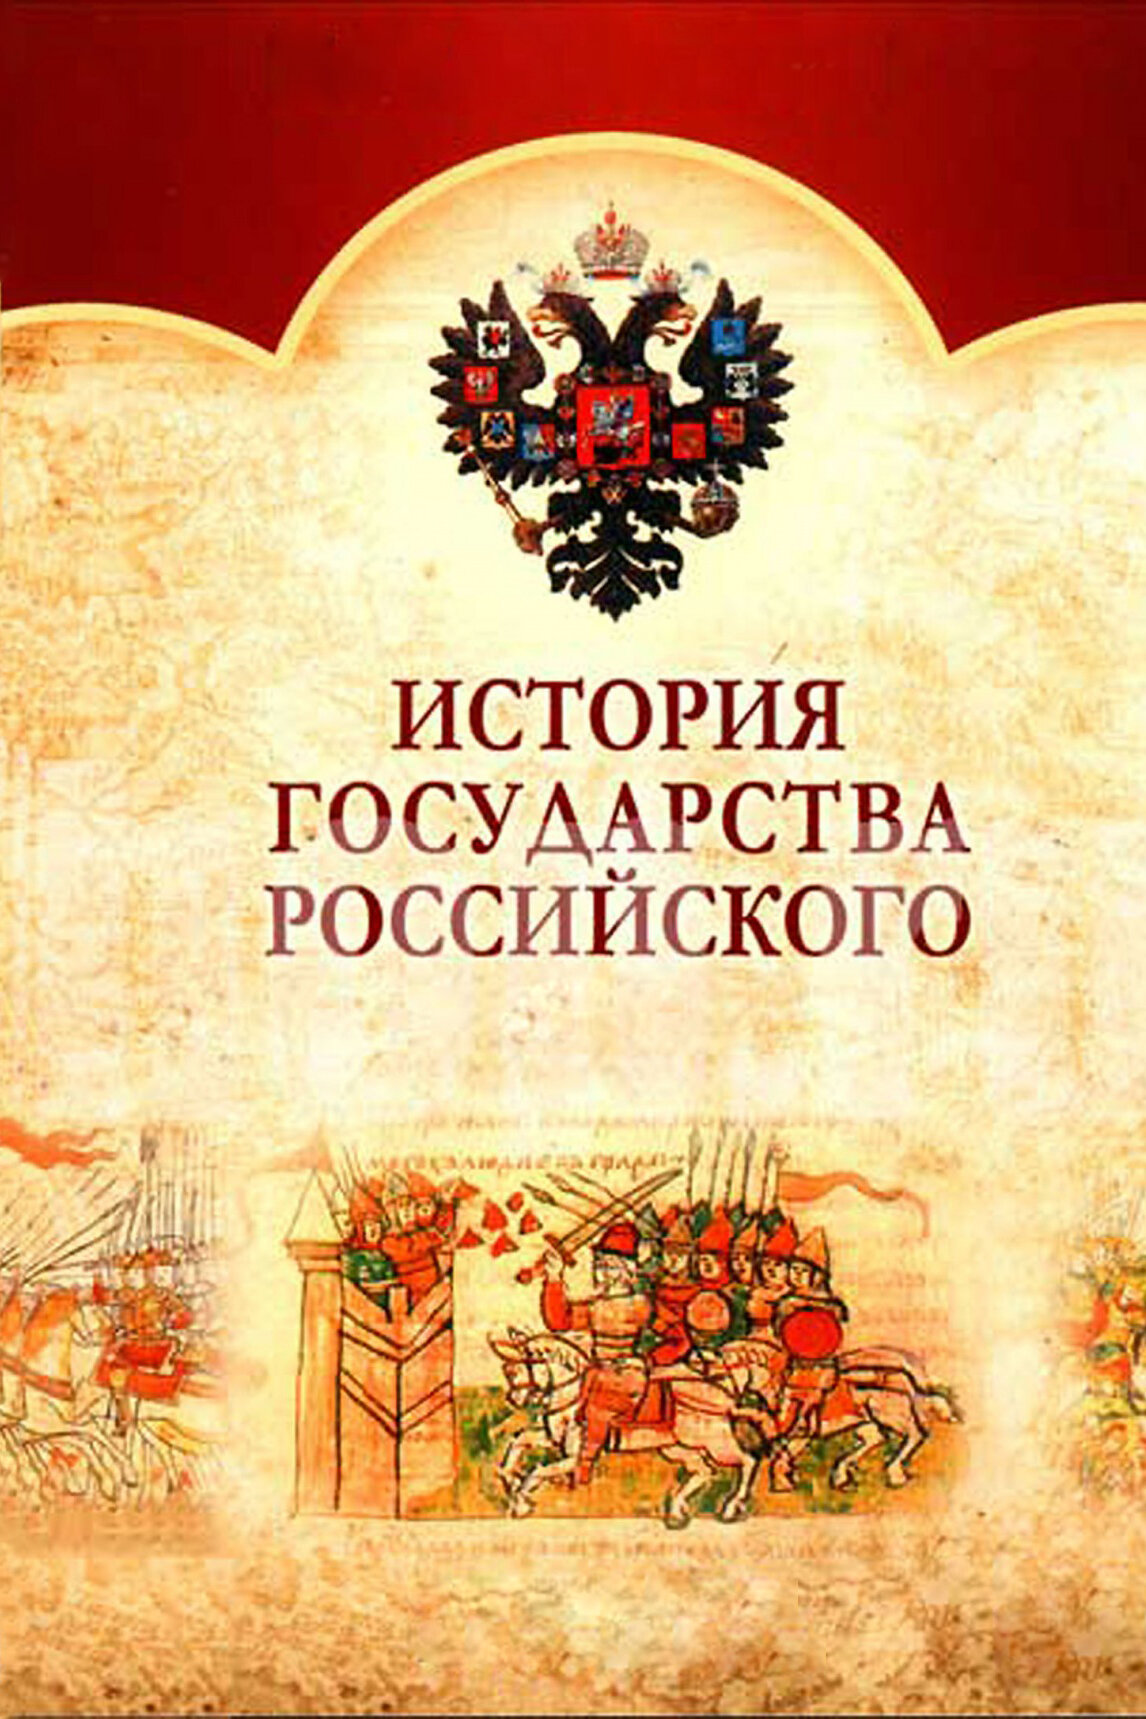 Смотреть сериал История государства Российского 2007 года онлайн